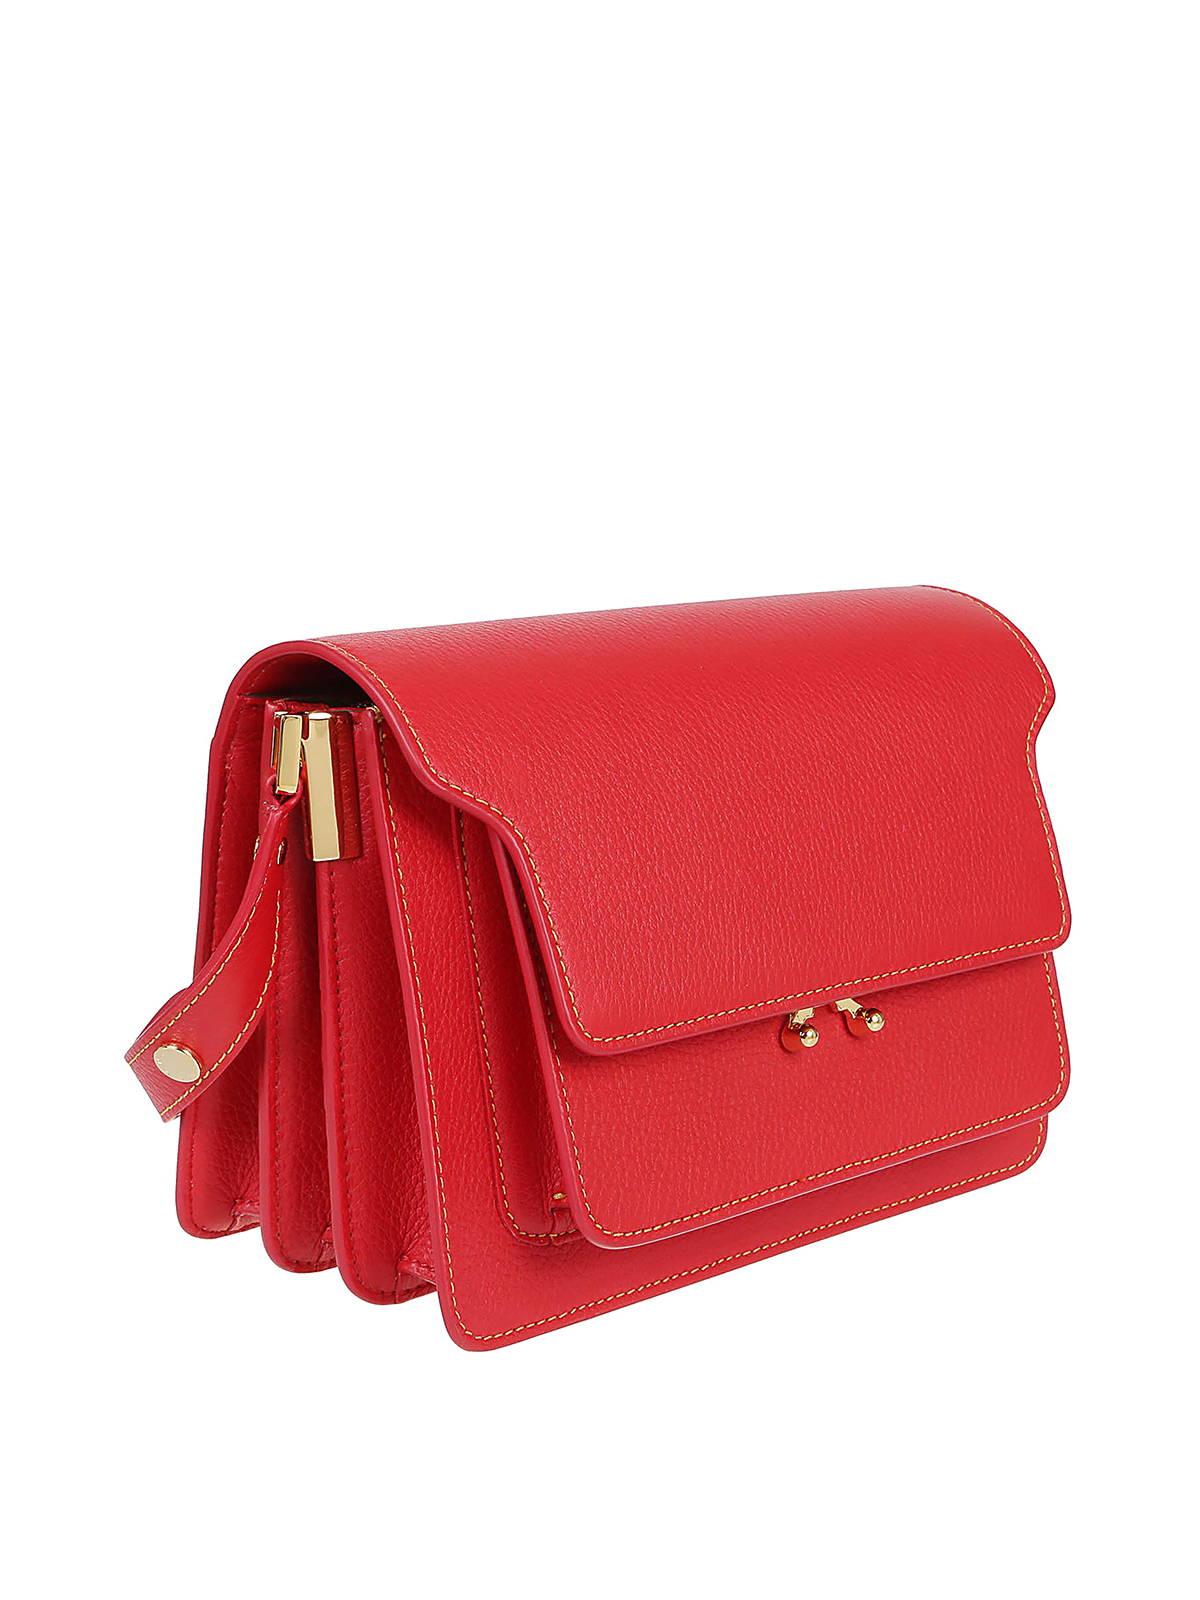 Shoulder bags Marni - Red hammered leather Trunk bag -